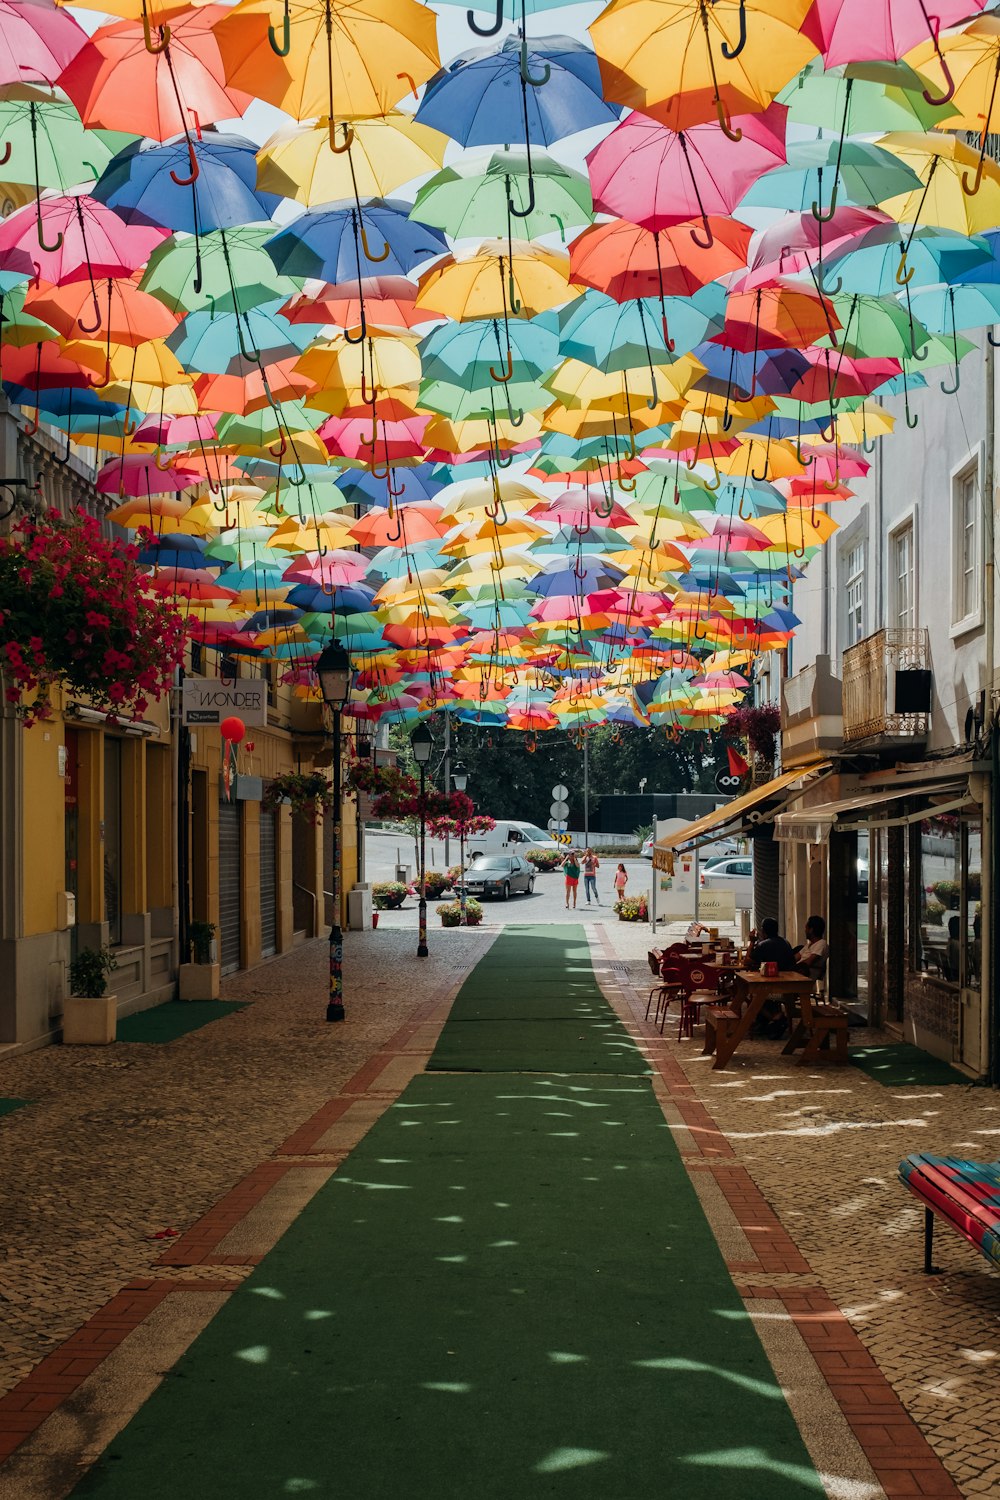 Pantalla de paraguas de colores variados